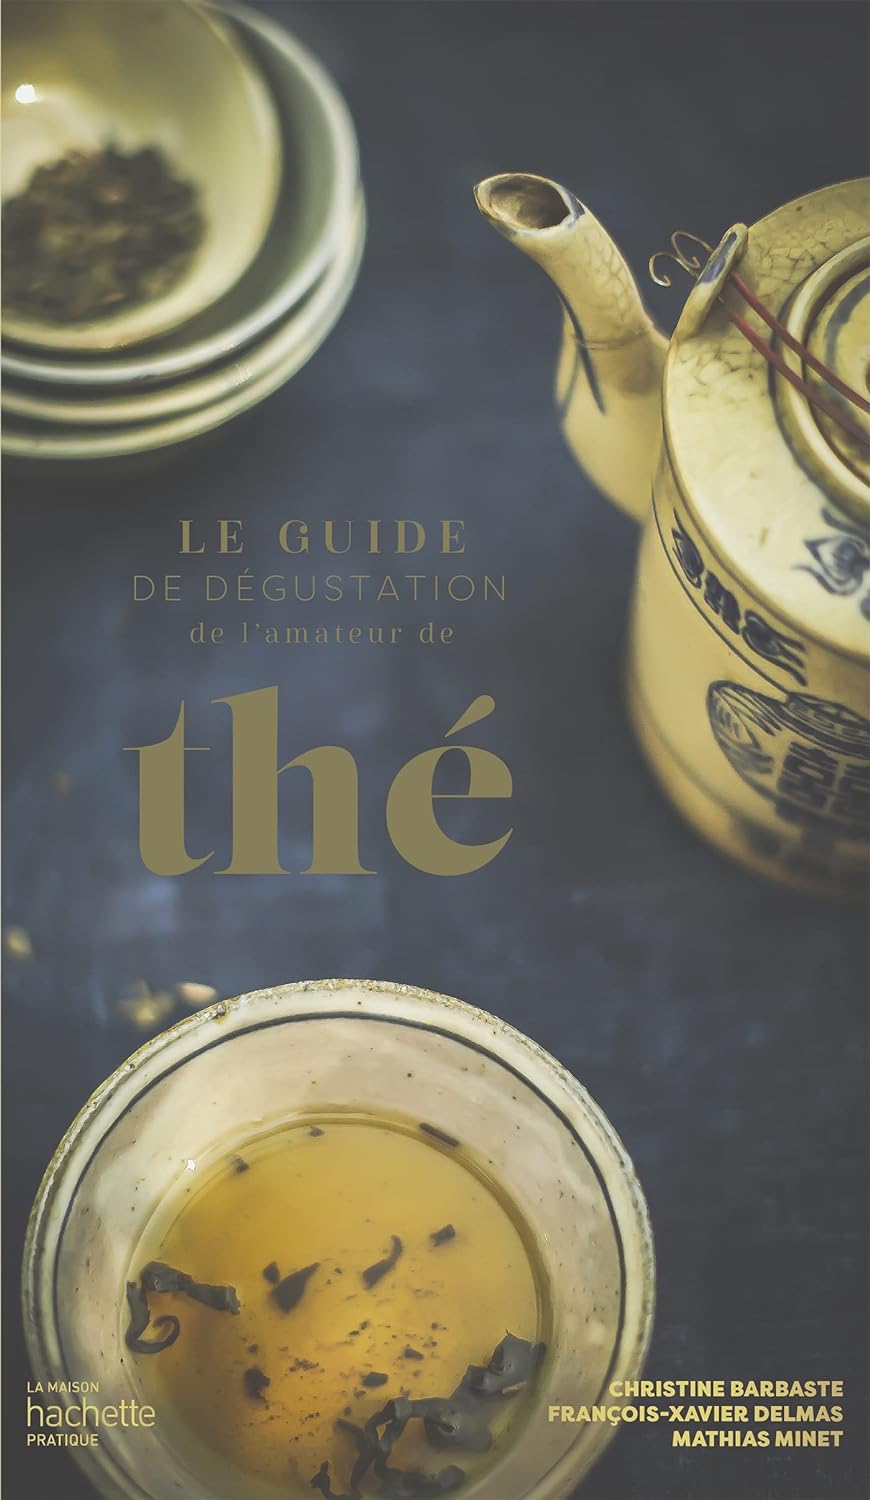 Christine Barbaste, François-Xavier Delmas, Mathias Minet: Le guide de dégustation de l'amateur de thé (Français language, 2022, Hachette Prat)